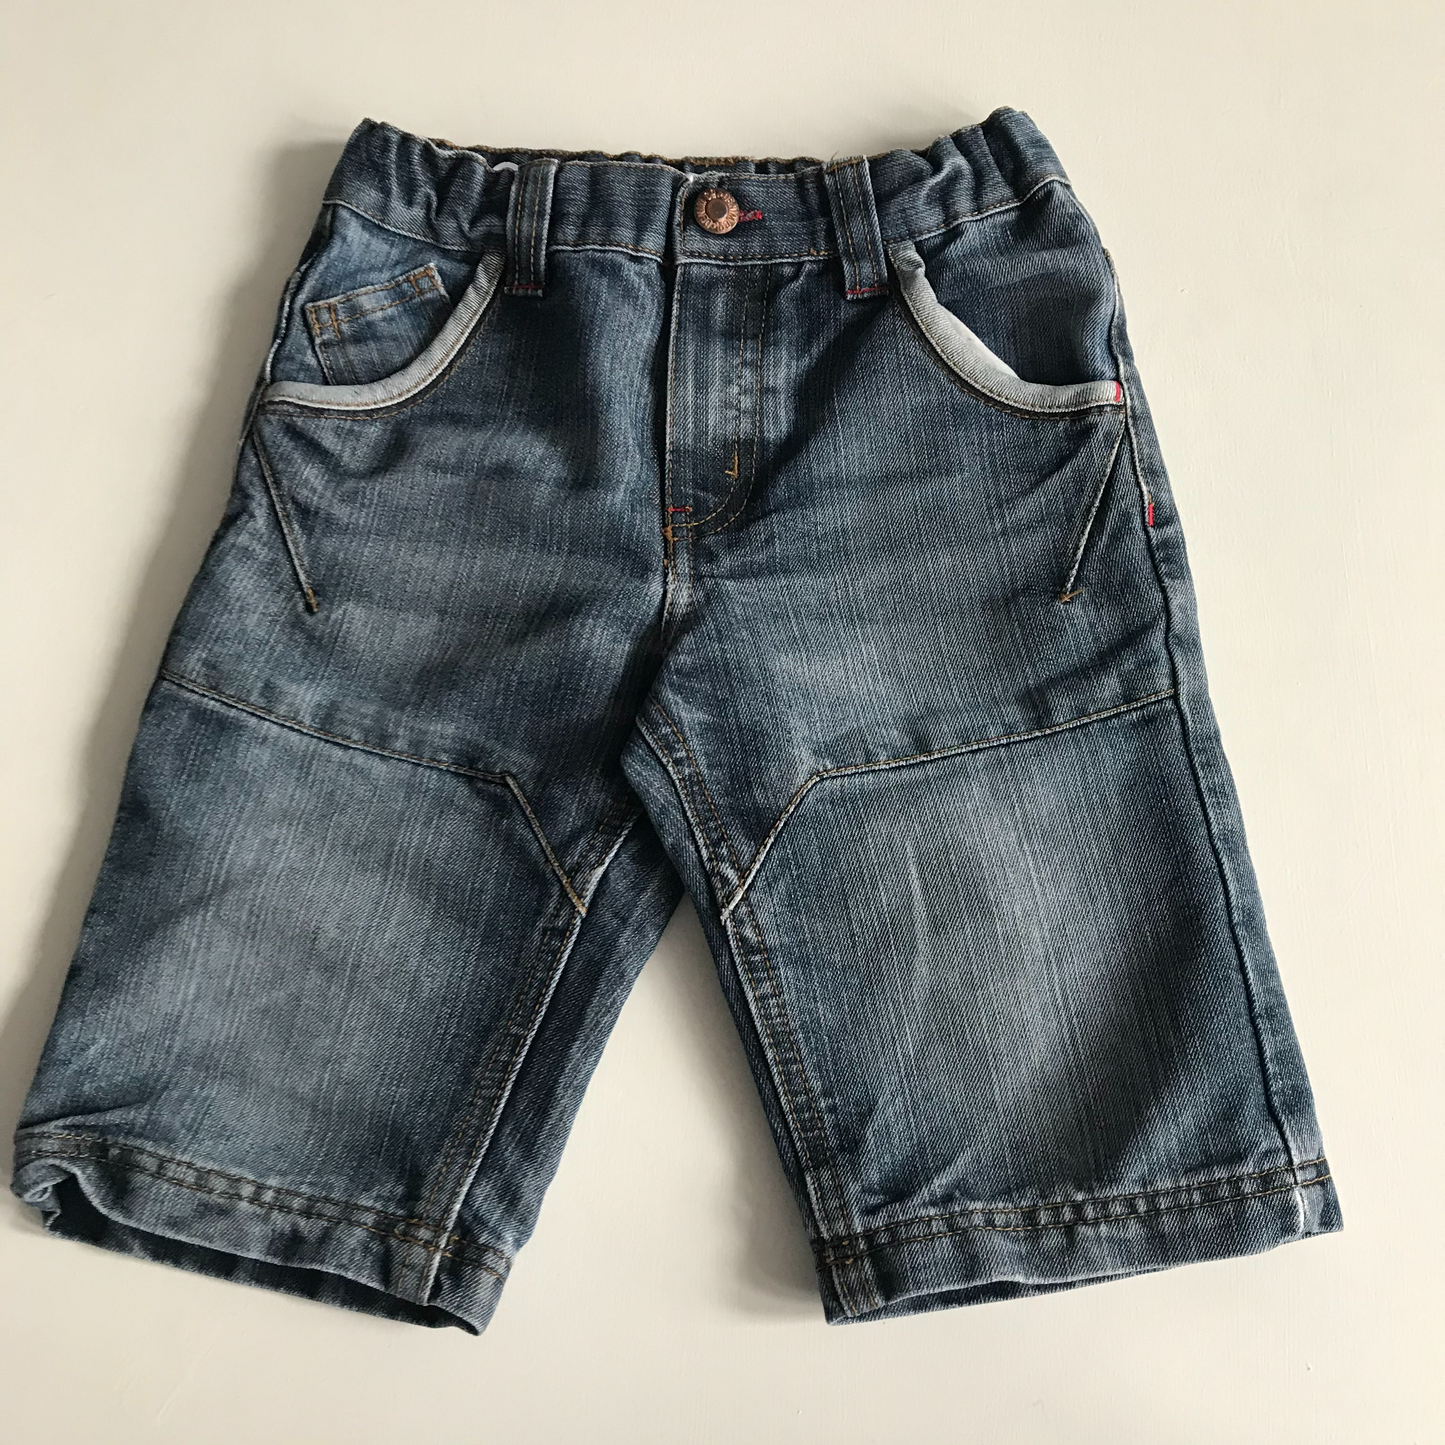 Shorts - Denim - Age 6